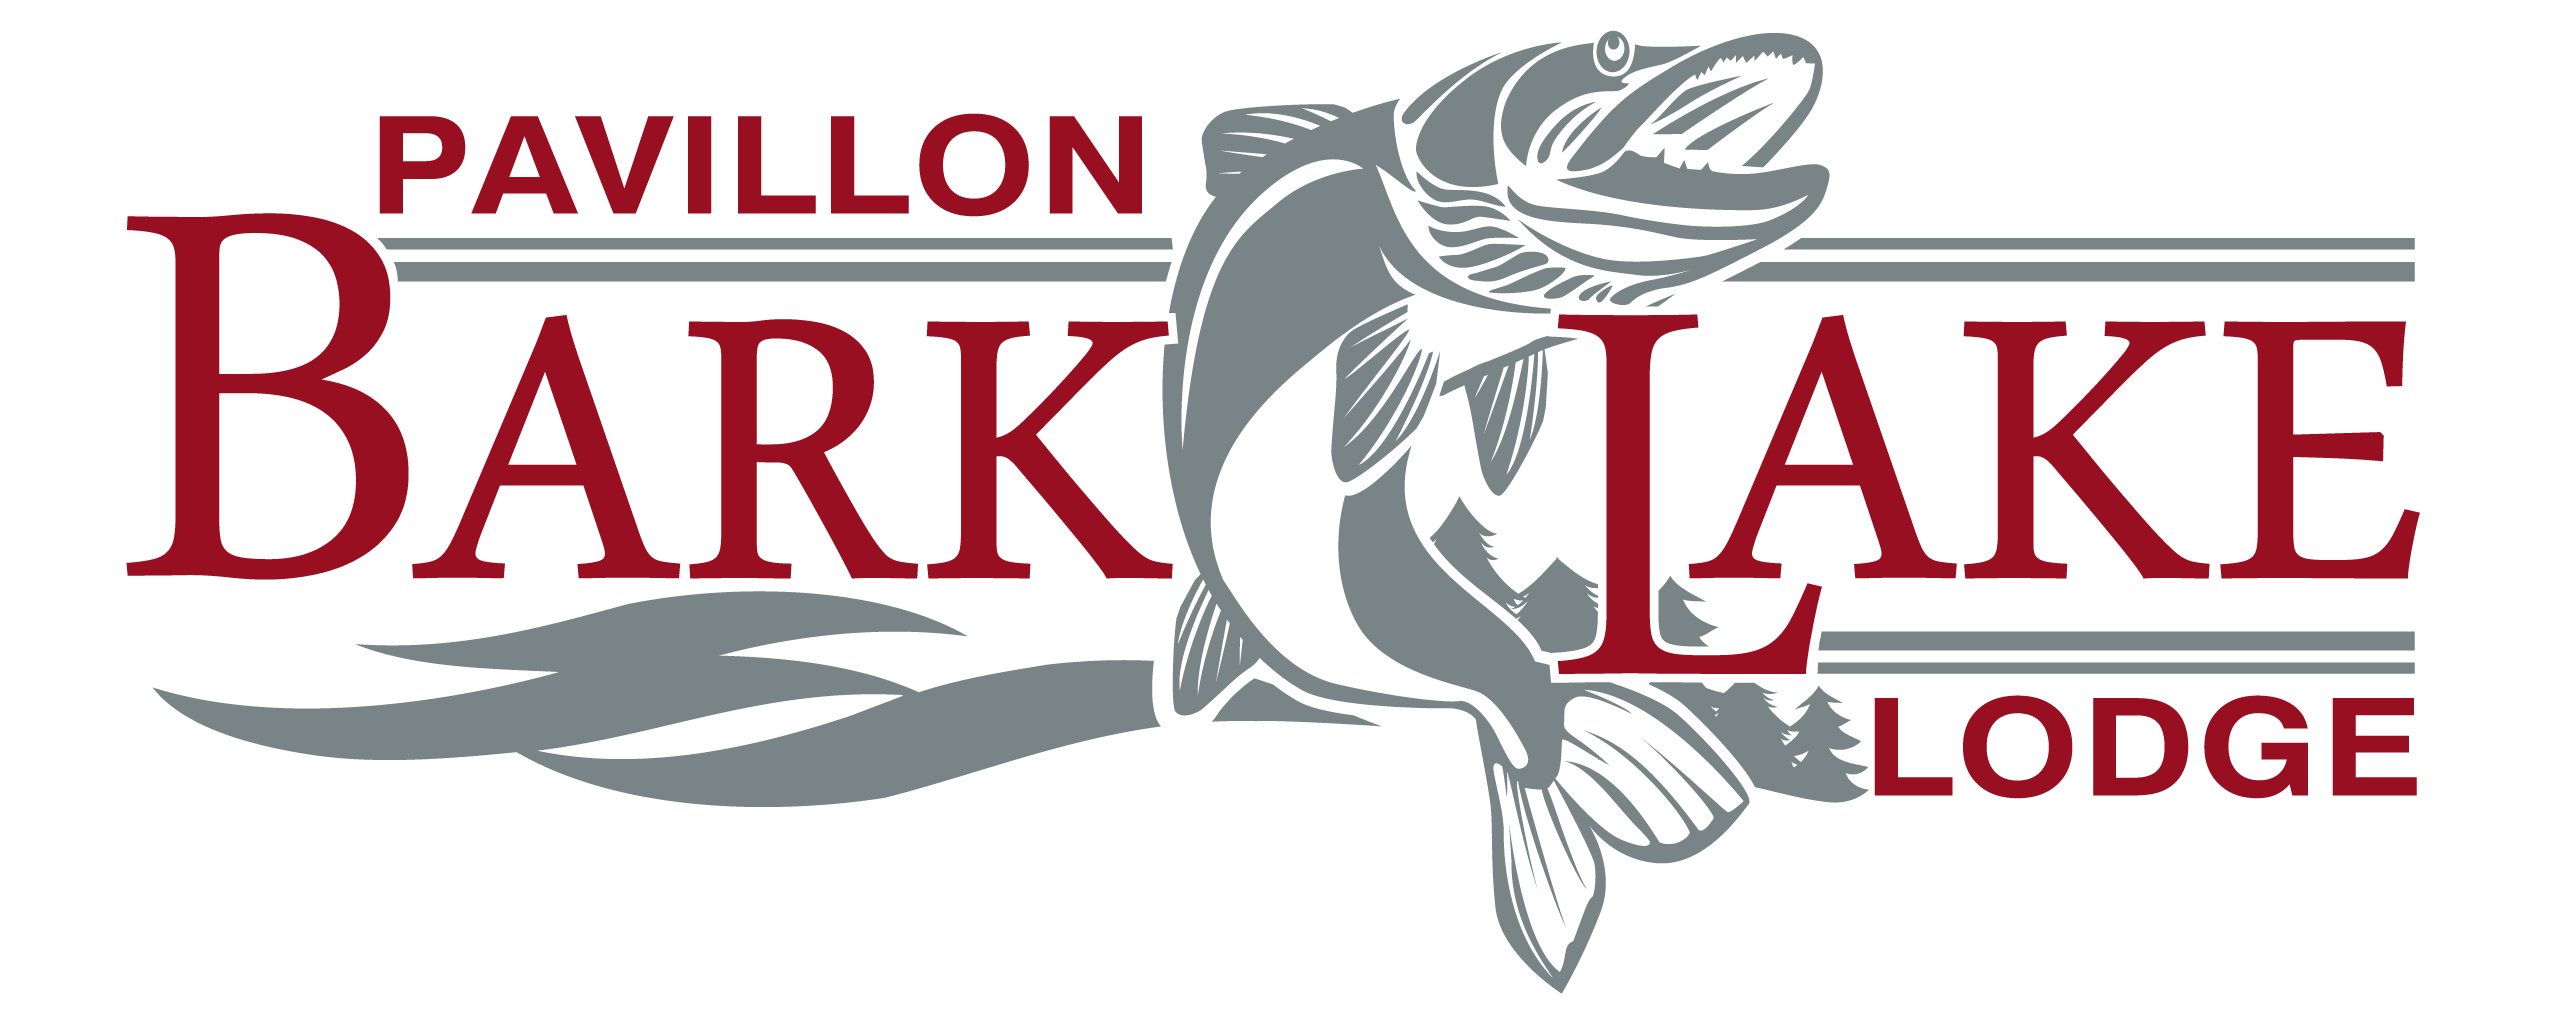 Pavillion Bark Lake Lodge logo